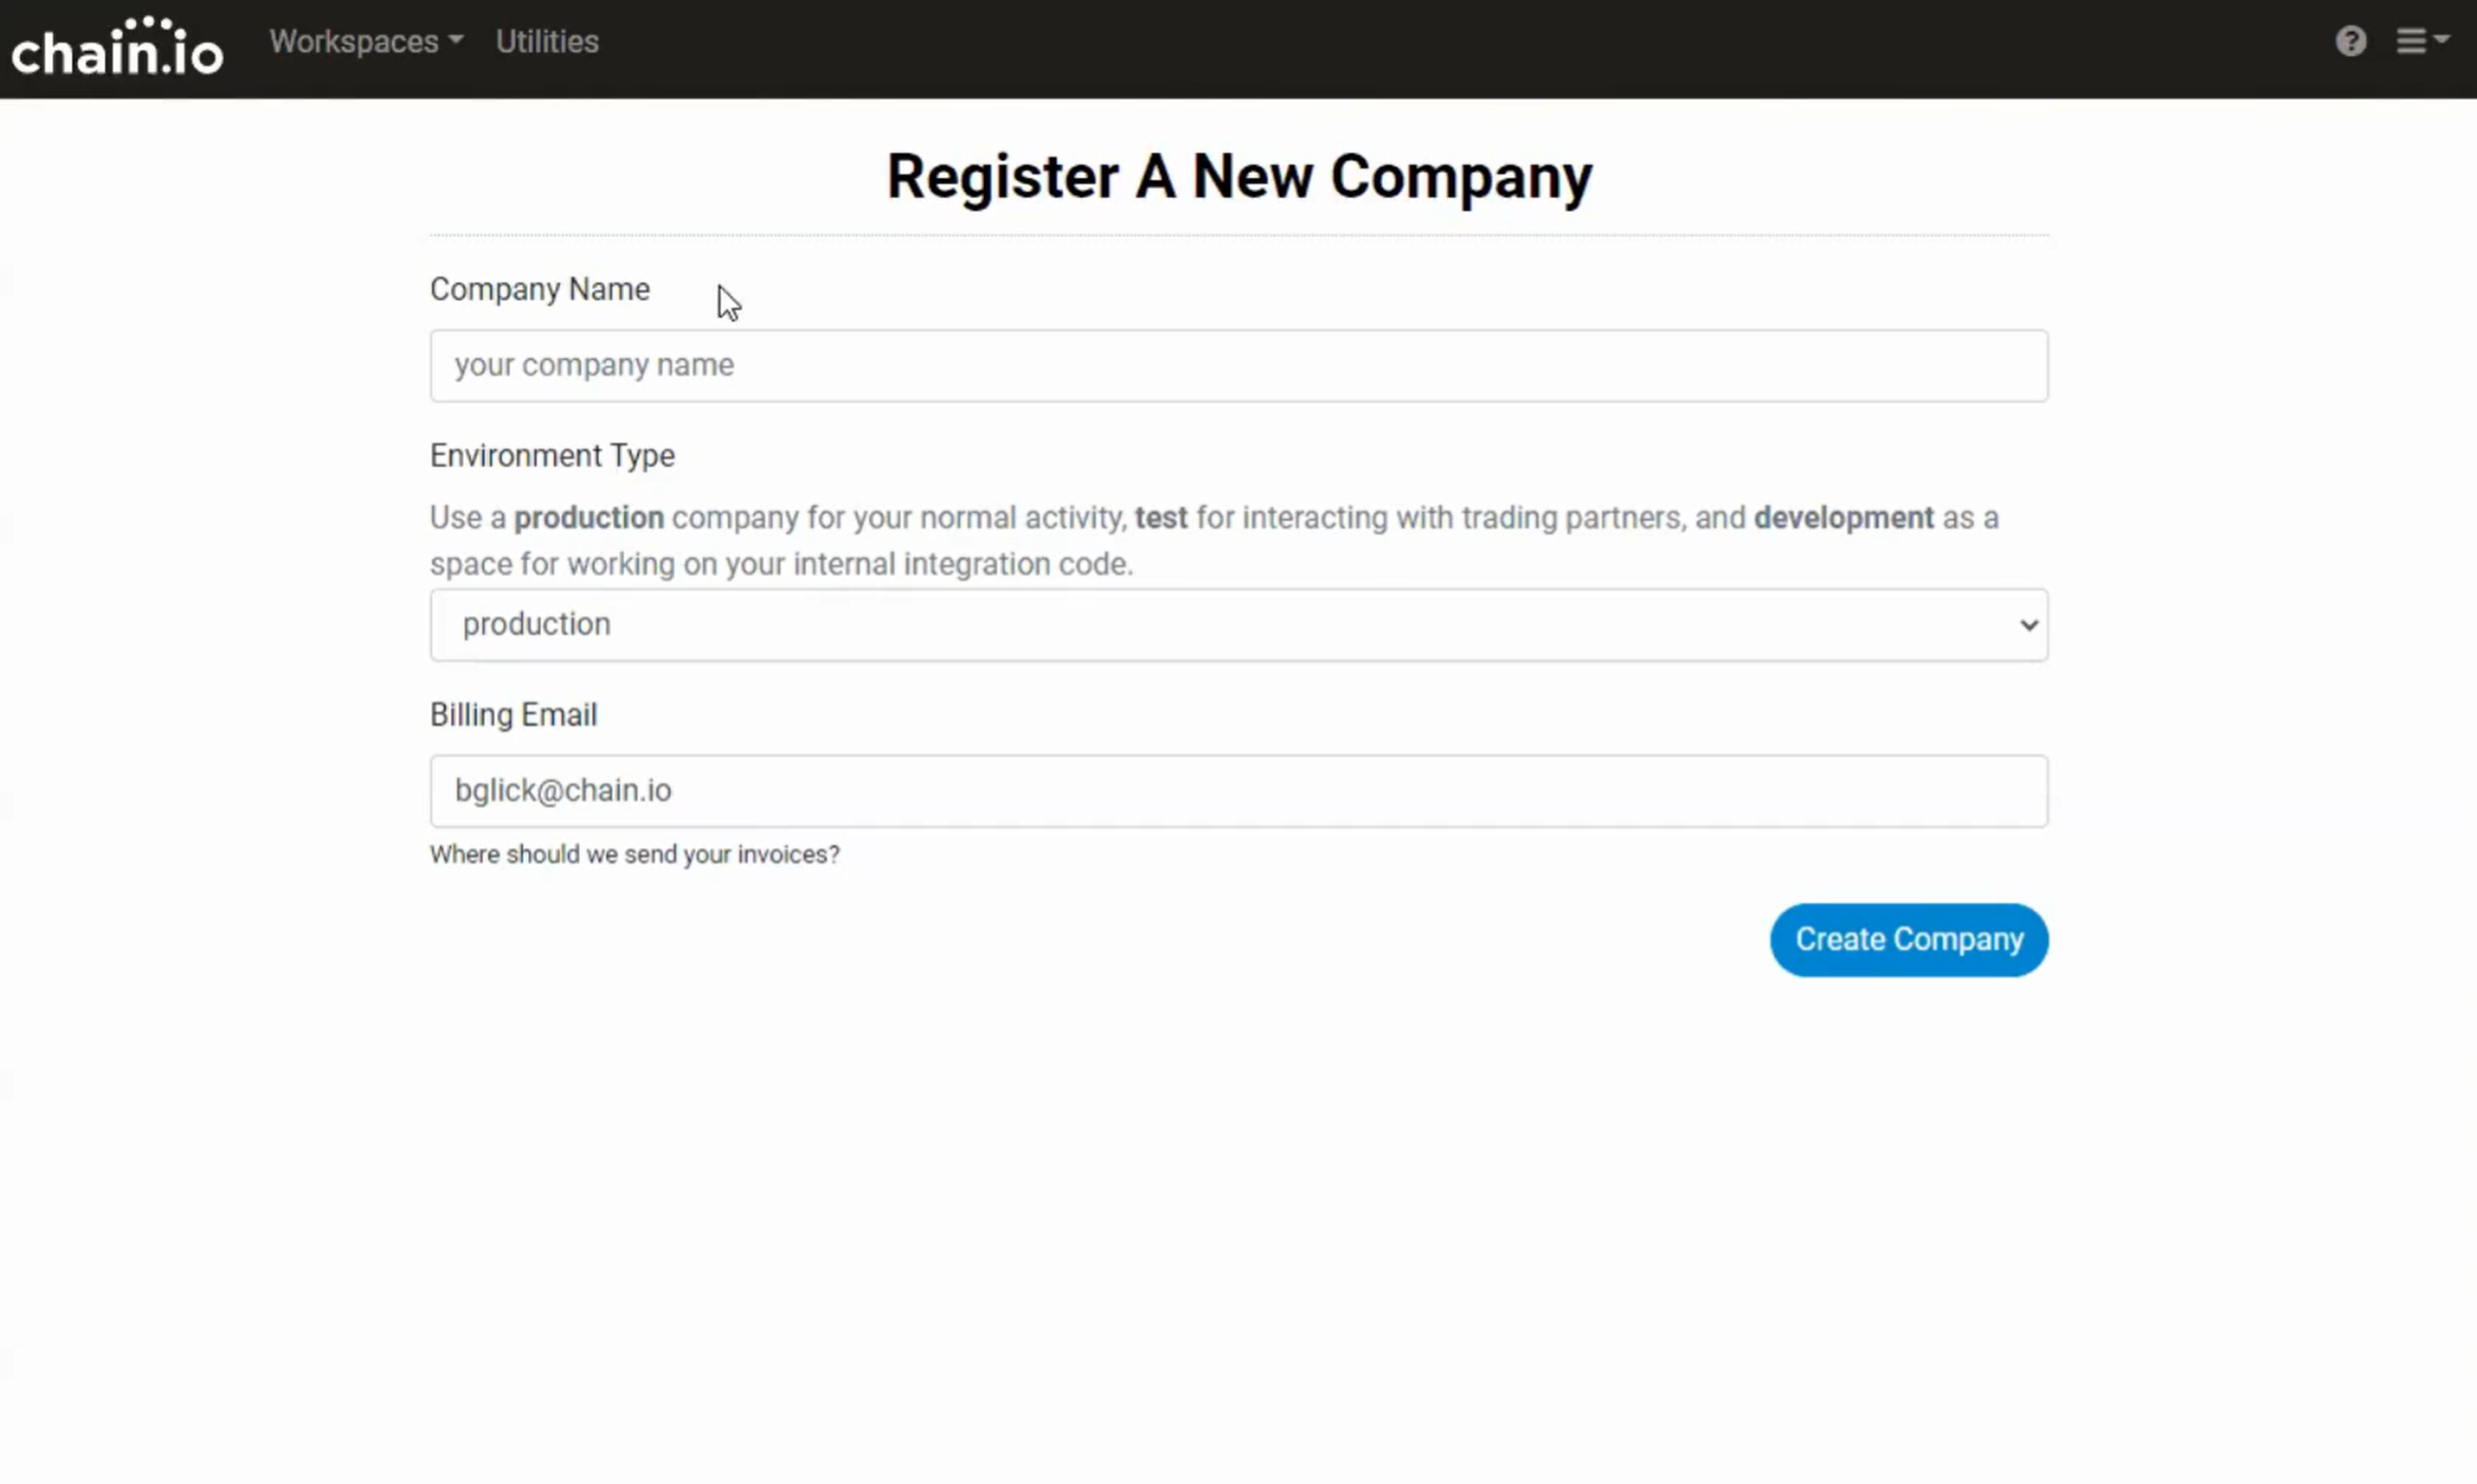 register a new company in the chain.io portal